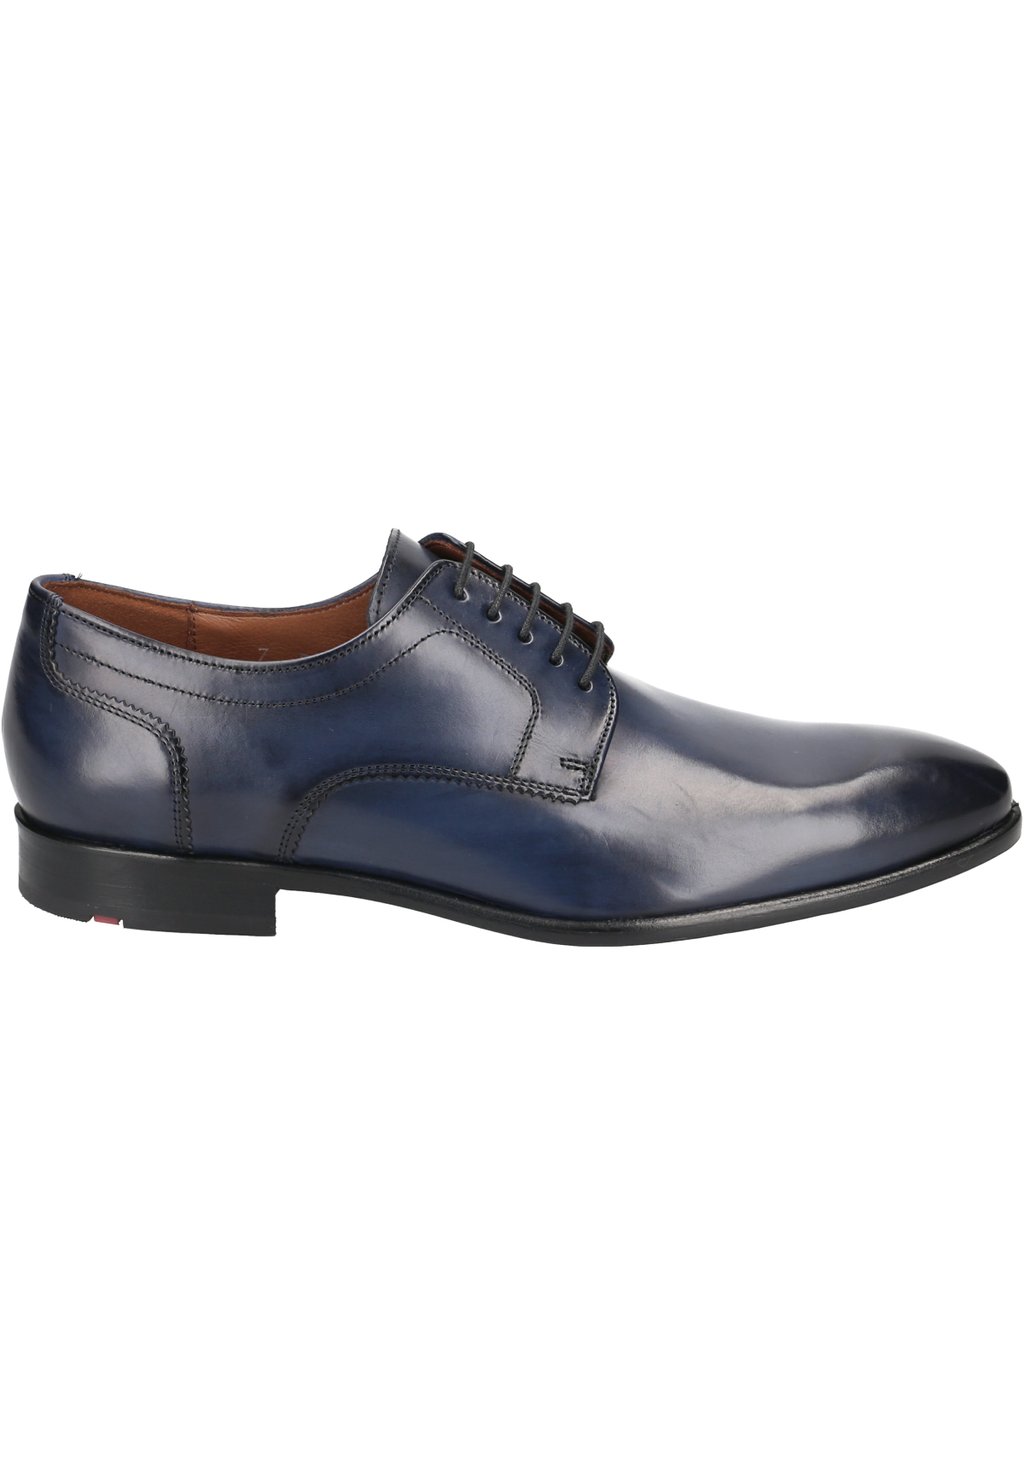 Деловые туфли на шнуровке PADOS Lloyd, цвет blau деловые туфли на шнуровке suffolk lloyd цвет blau